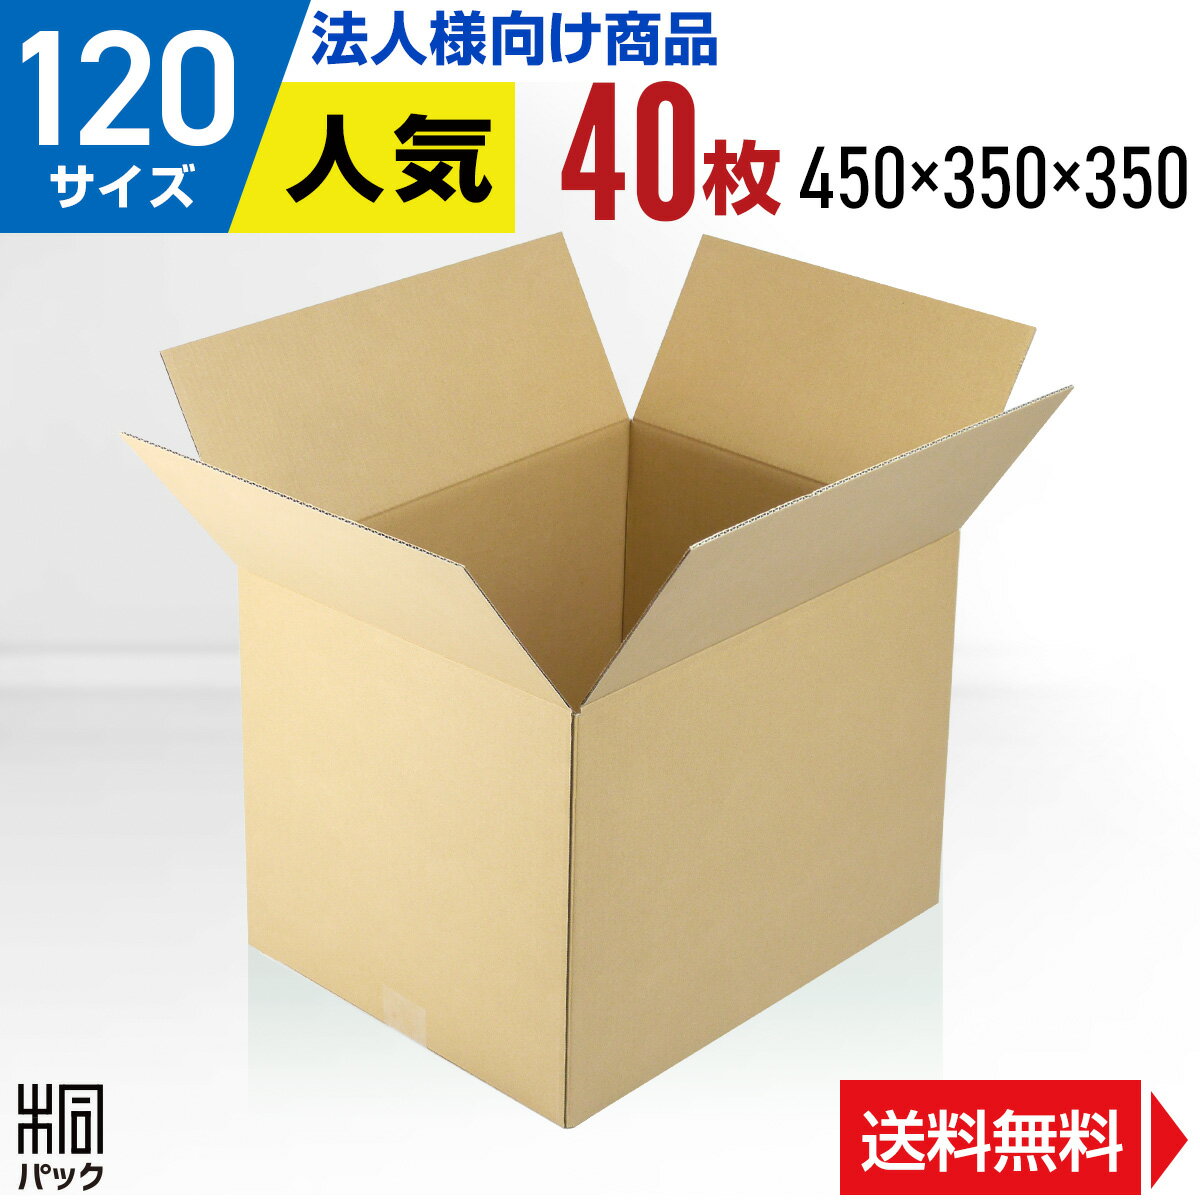 【法人特価】段ボール 箱 120サイズ 